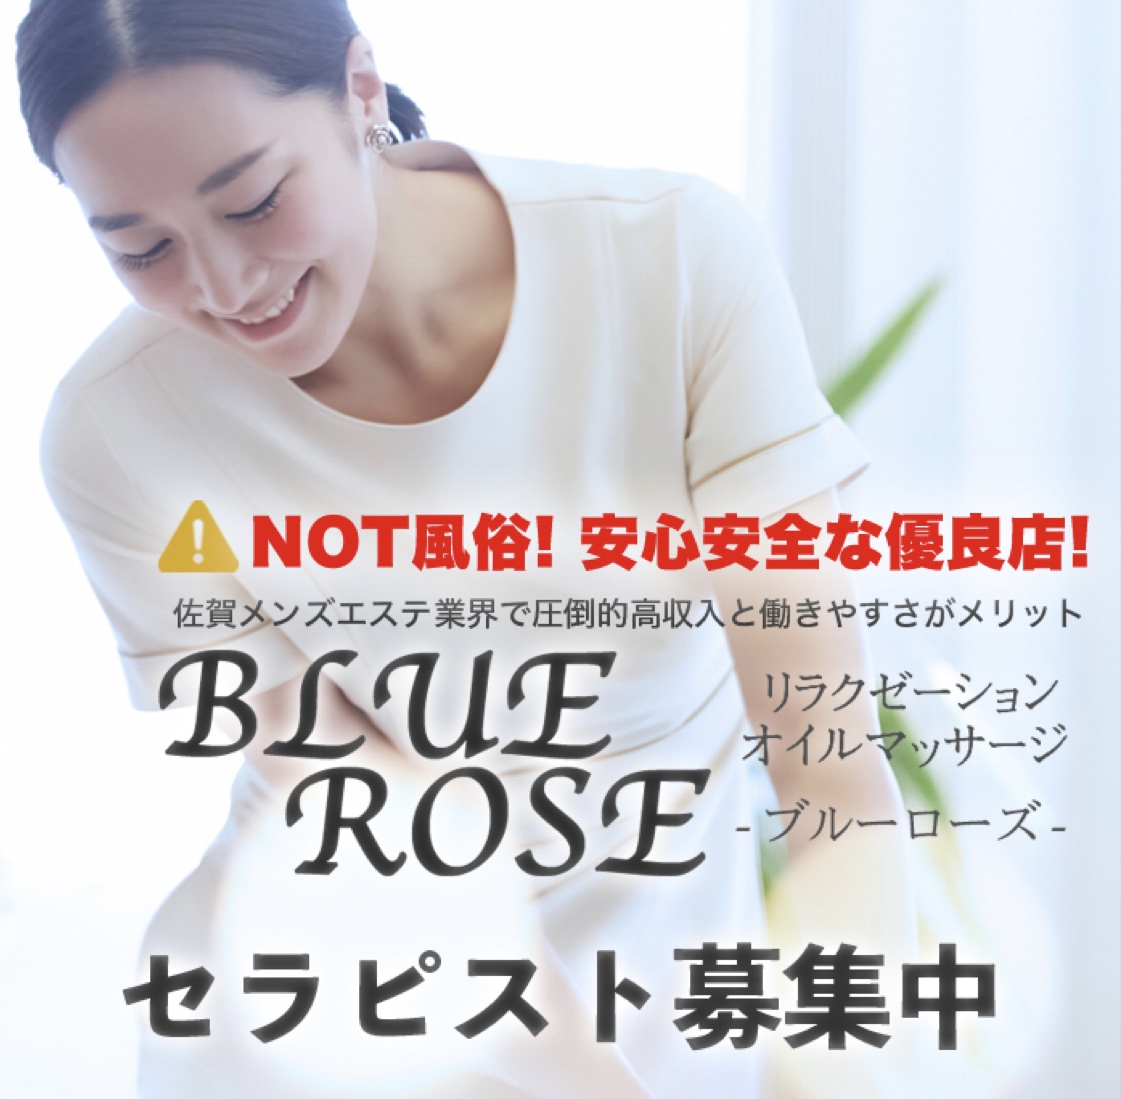 BLUE ROSE-ブルーローズ